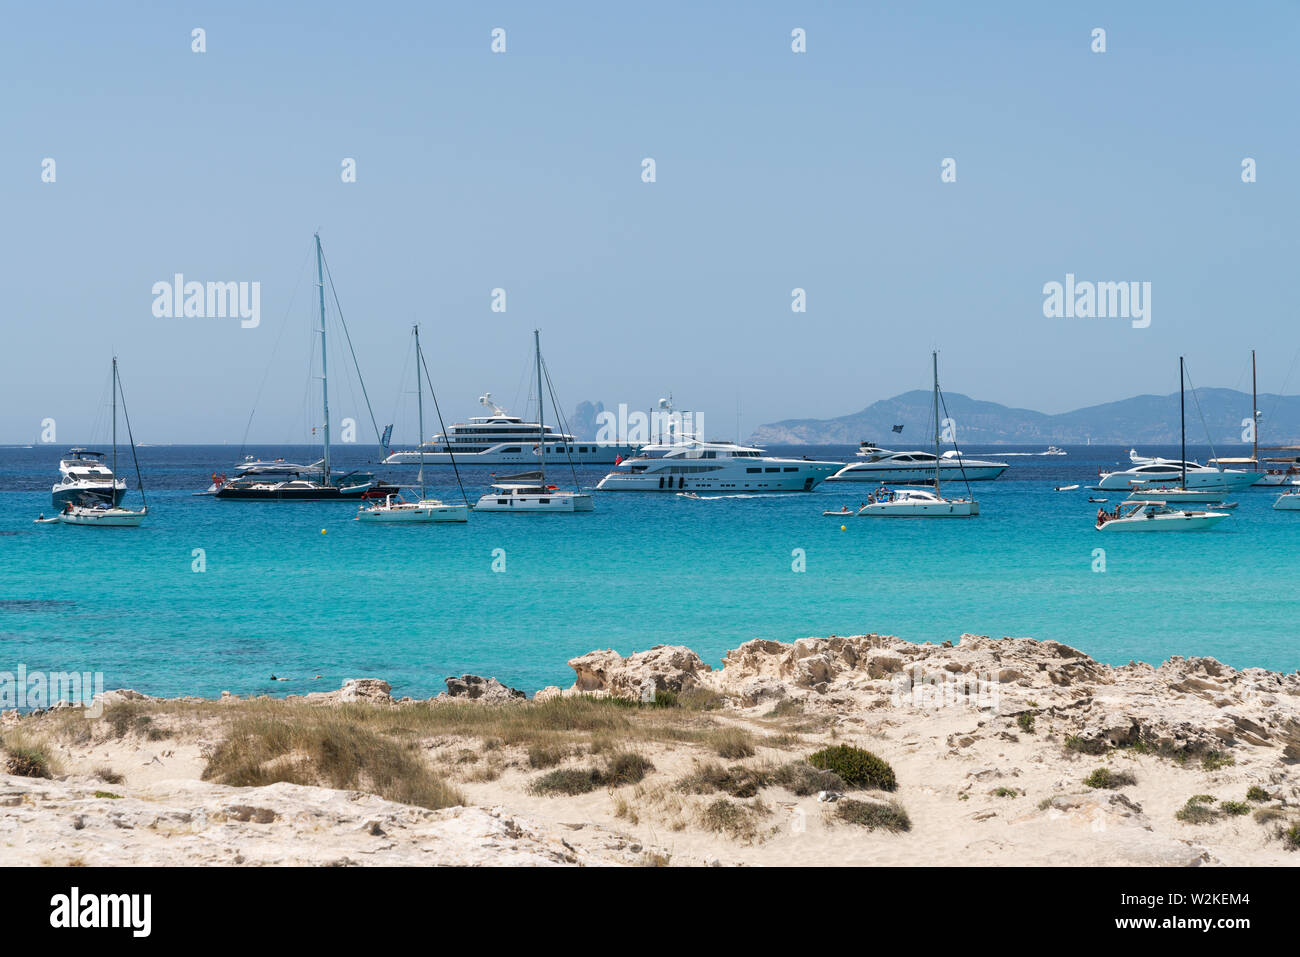 22.Juni 2019 - Formentera, Spanien. Vielen weißen moderne Yachten und Segelboote in der Nähe der Playa de Ses Illetes, türkisfarbenem Wasser Strand. Stockfoto